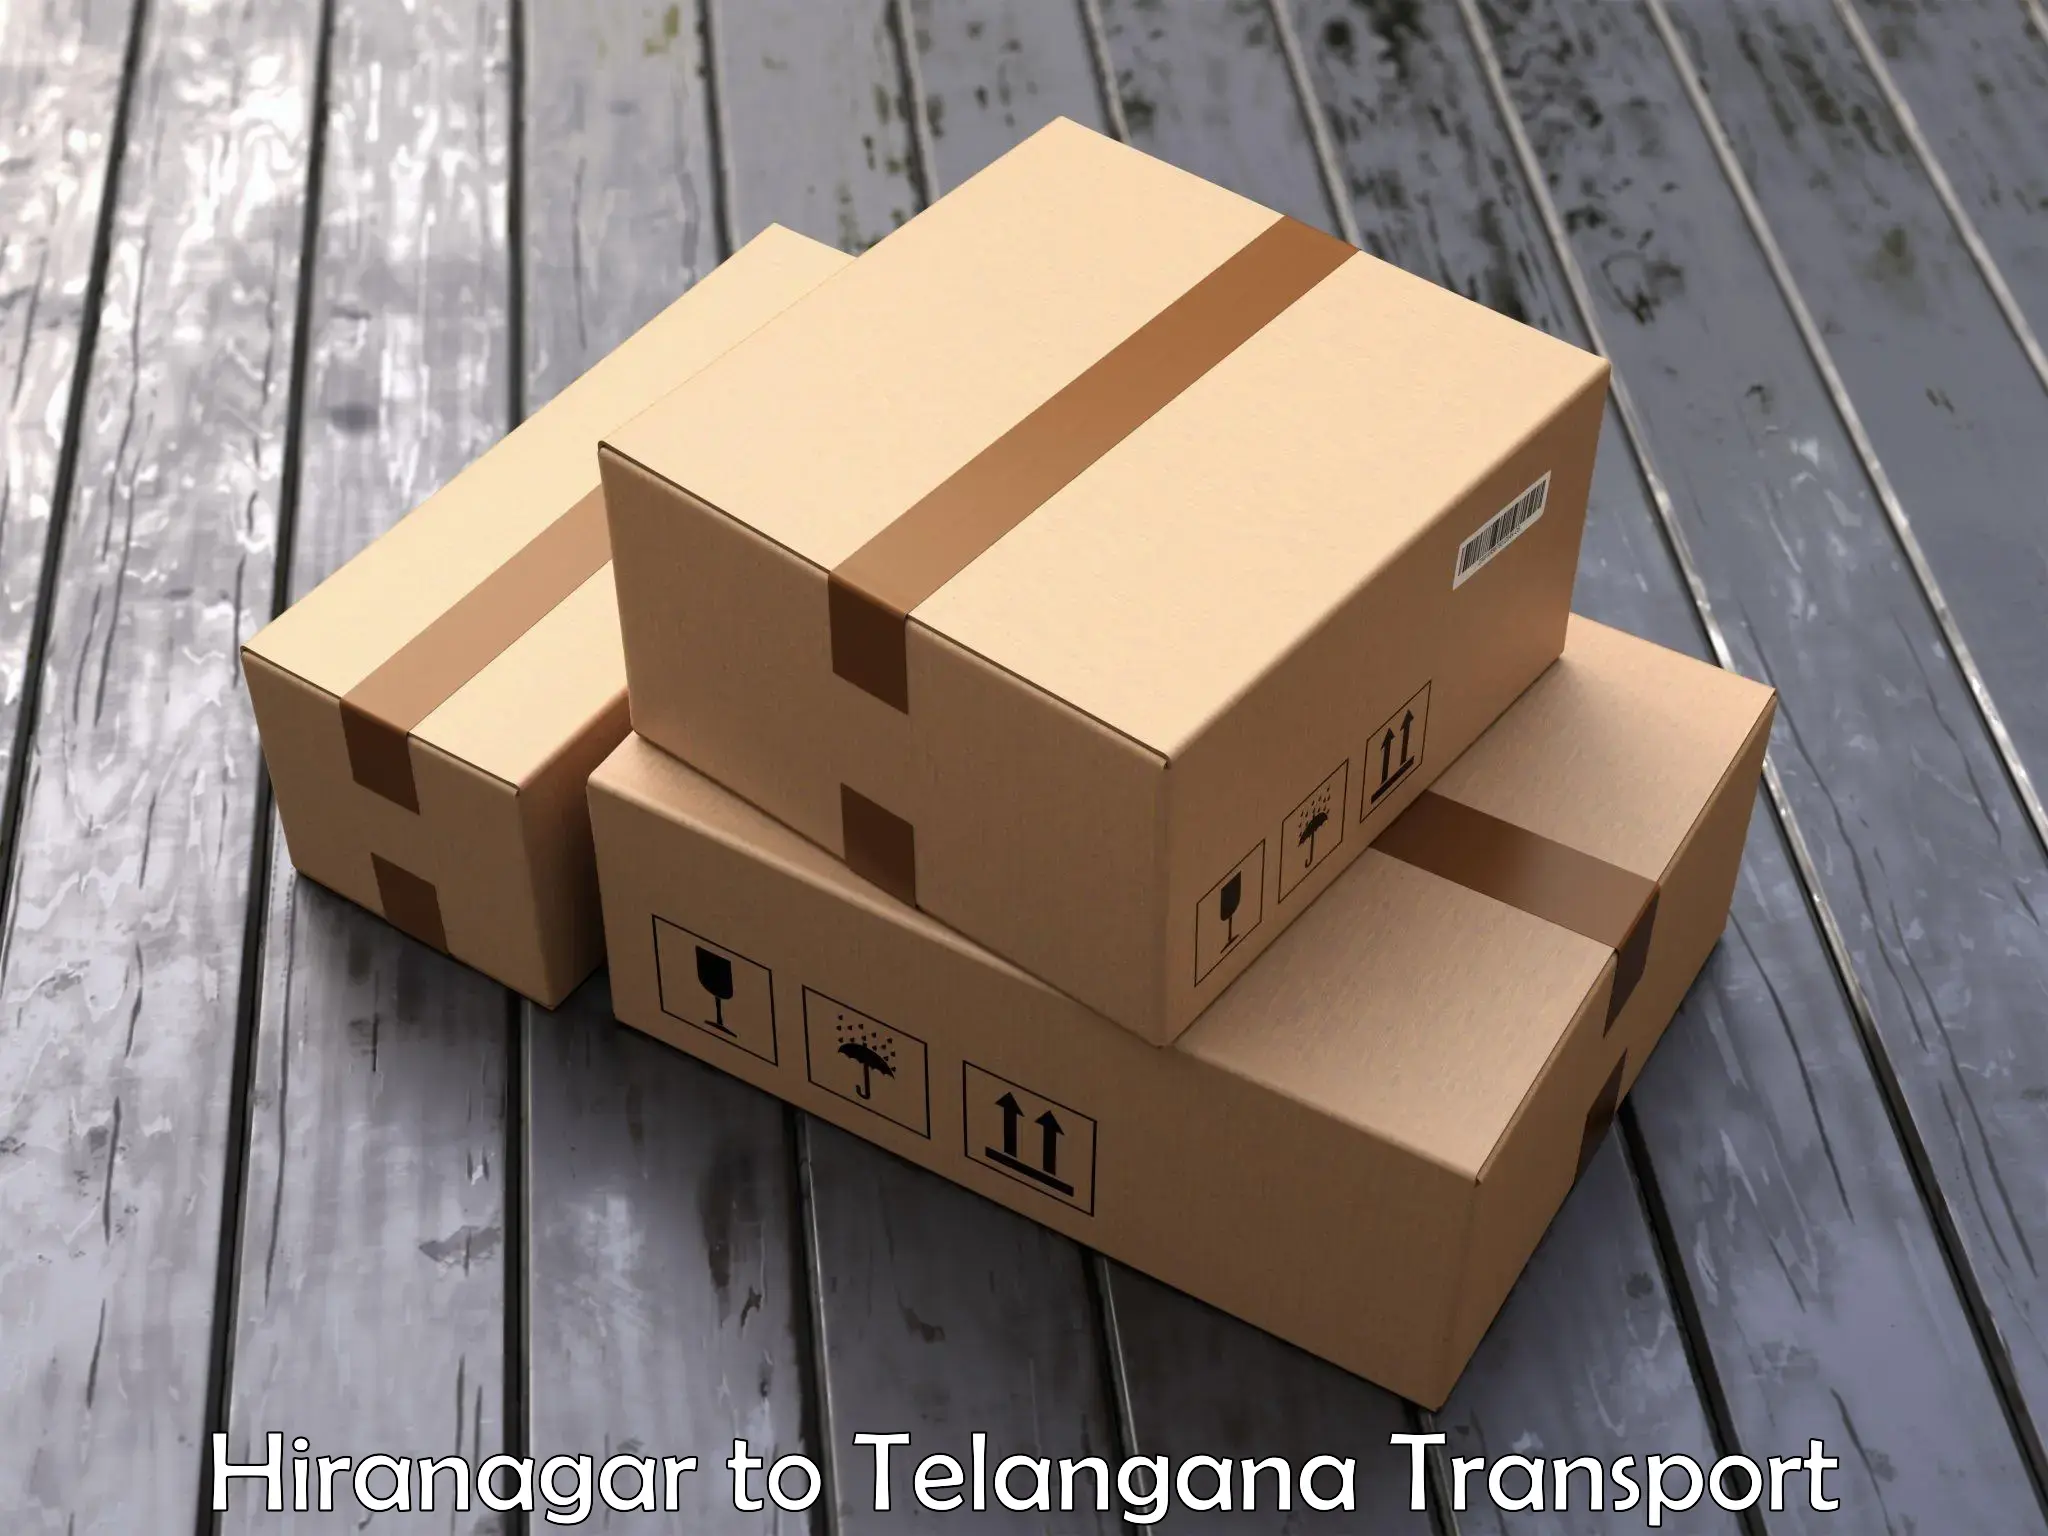 Daily transport service Hiranagar to Narayankhed